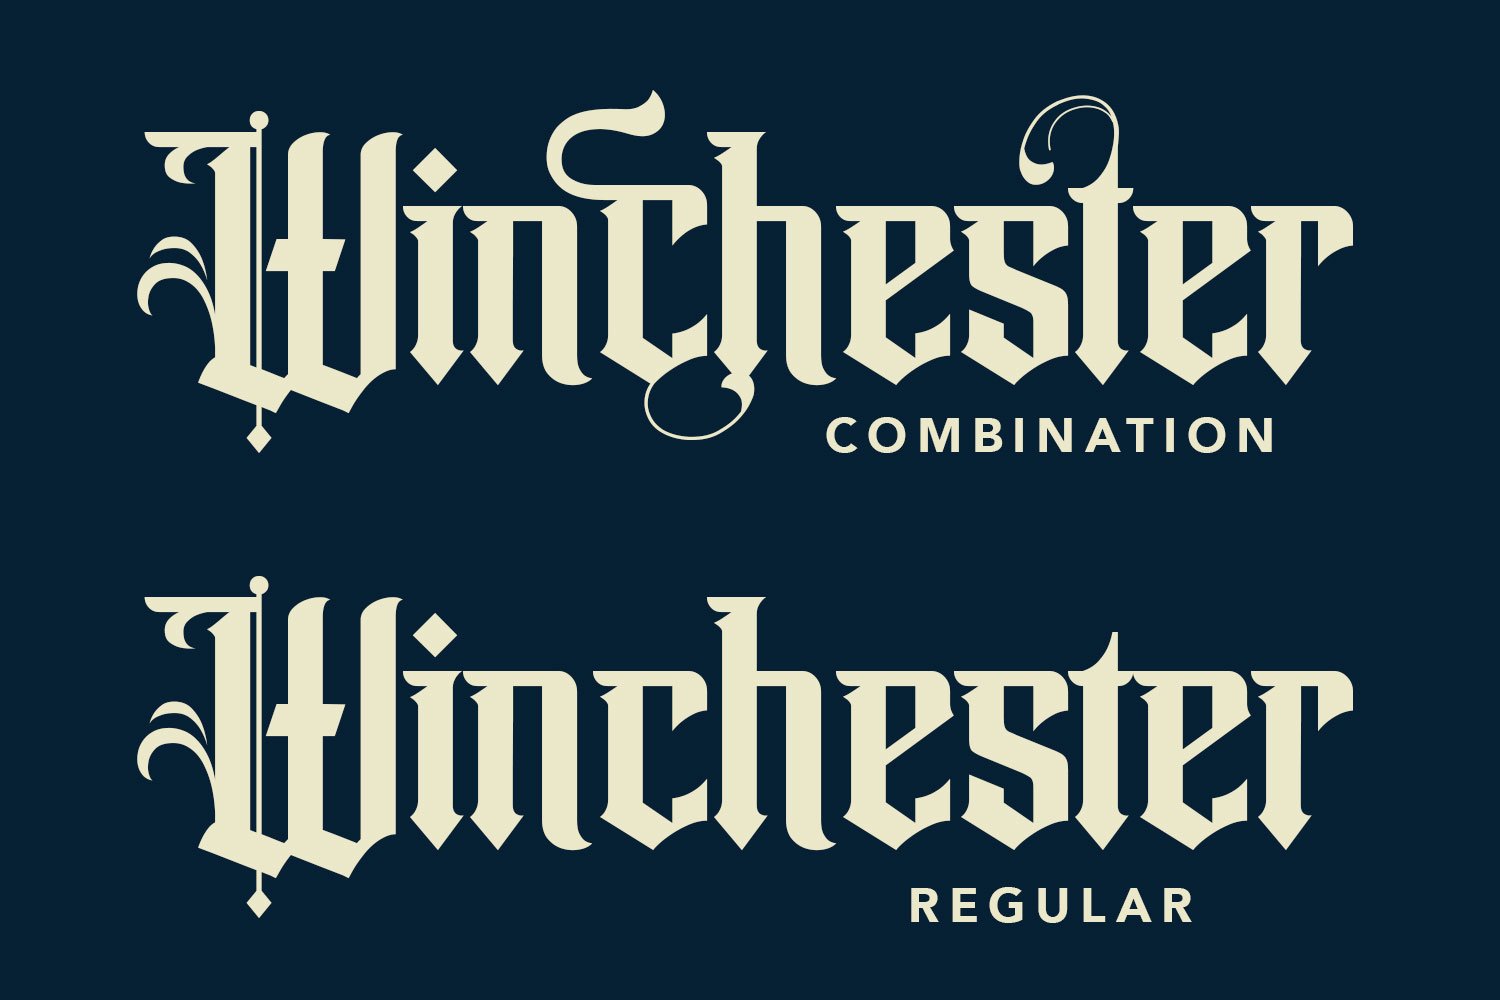 Winchester Blackletter Vintage Label preview image.